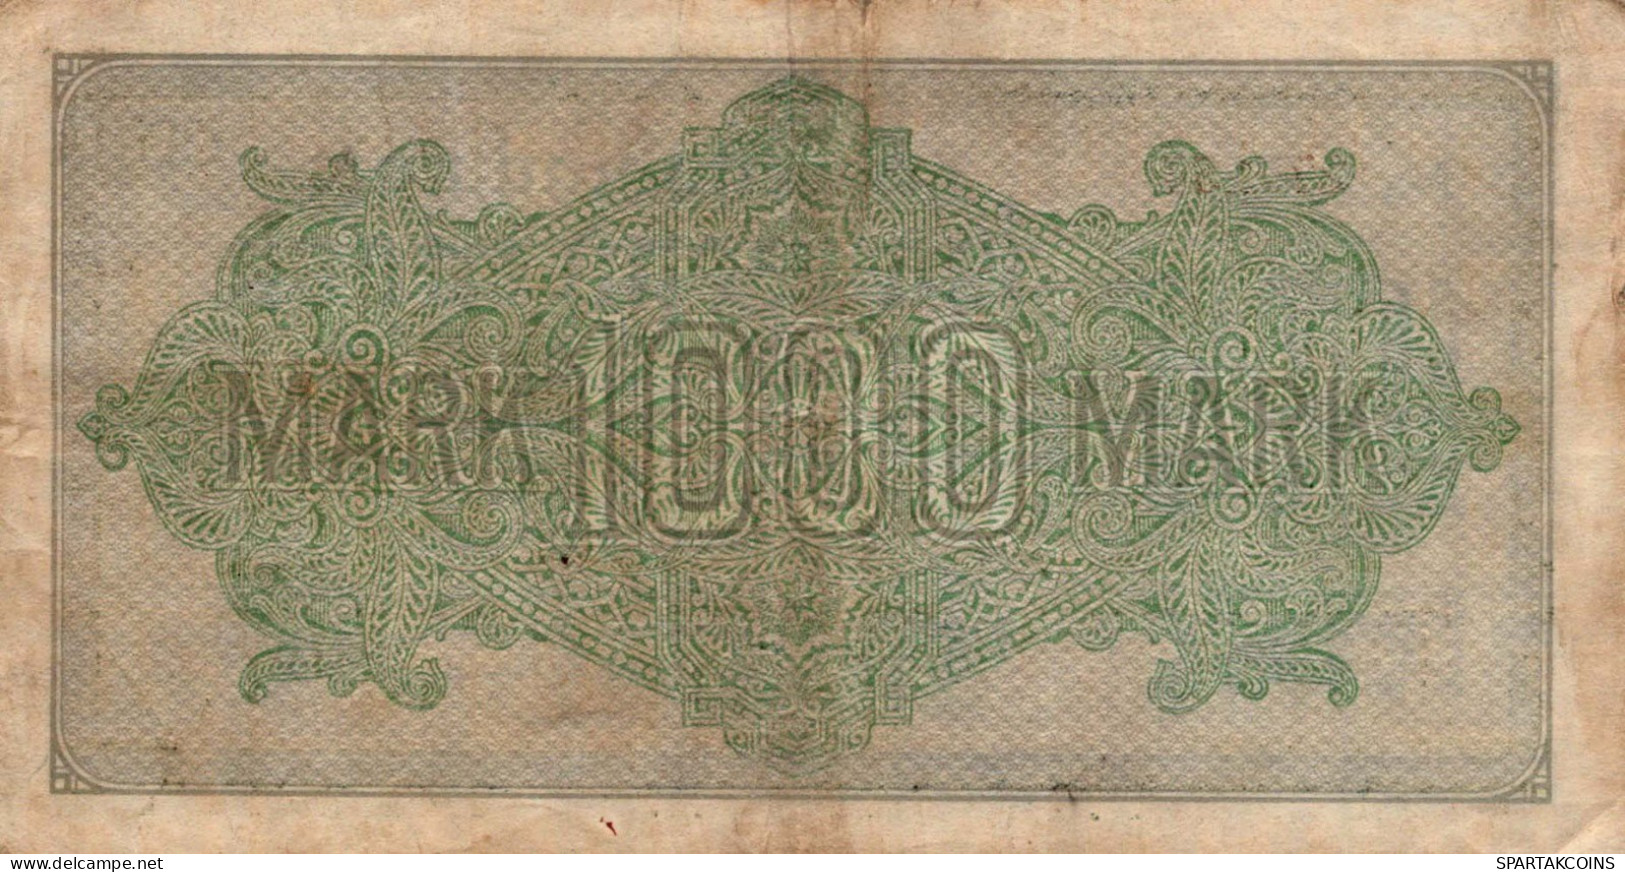 1000 MARK 1922 Stadt BERLIN DEUTSCHLAND Papiergeld Banknote #PL027 - [11] Emissions Locales